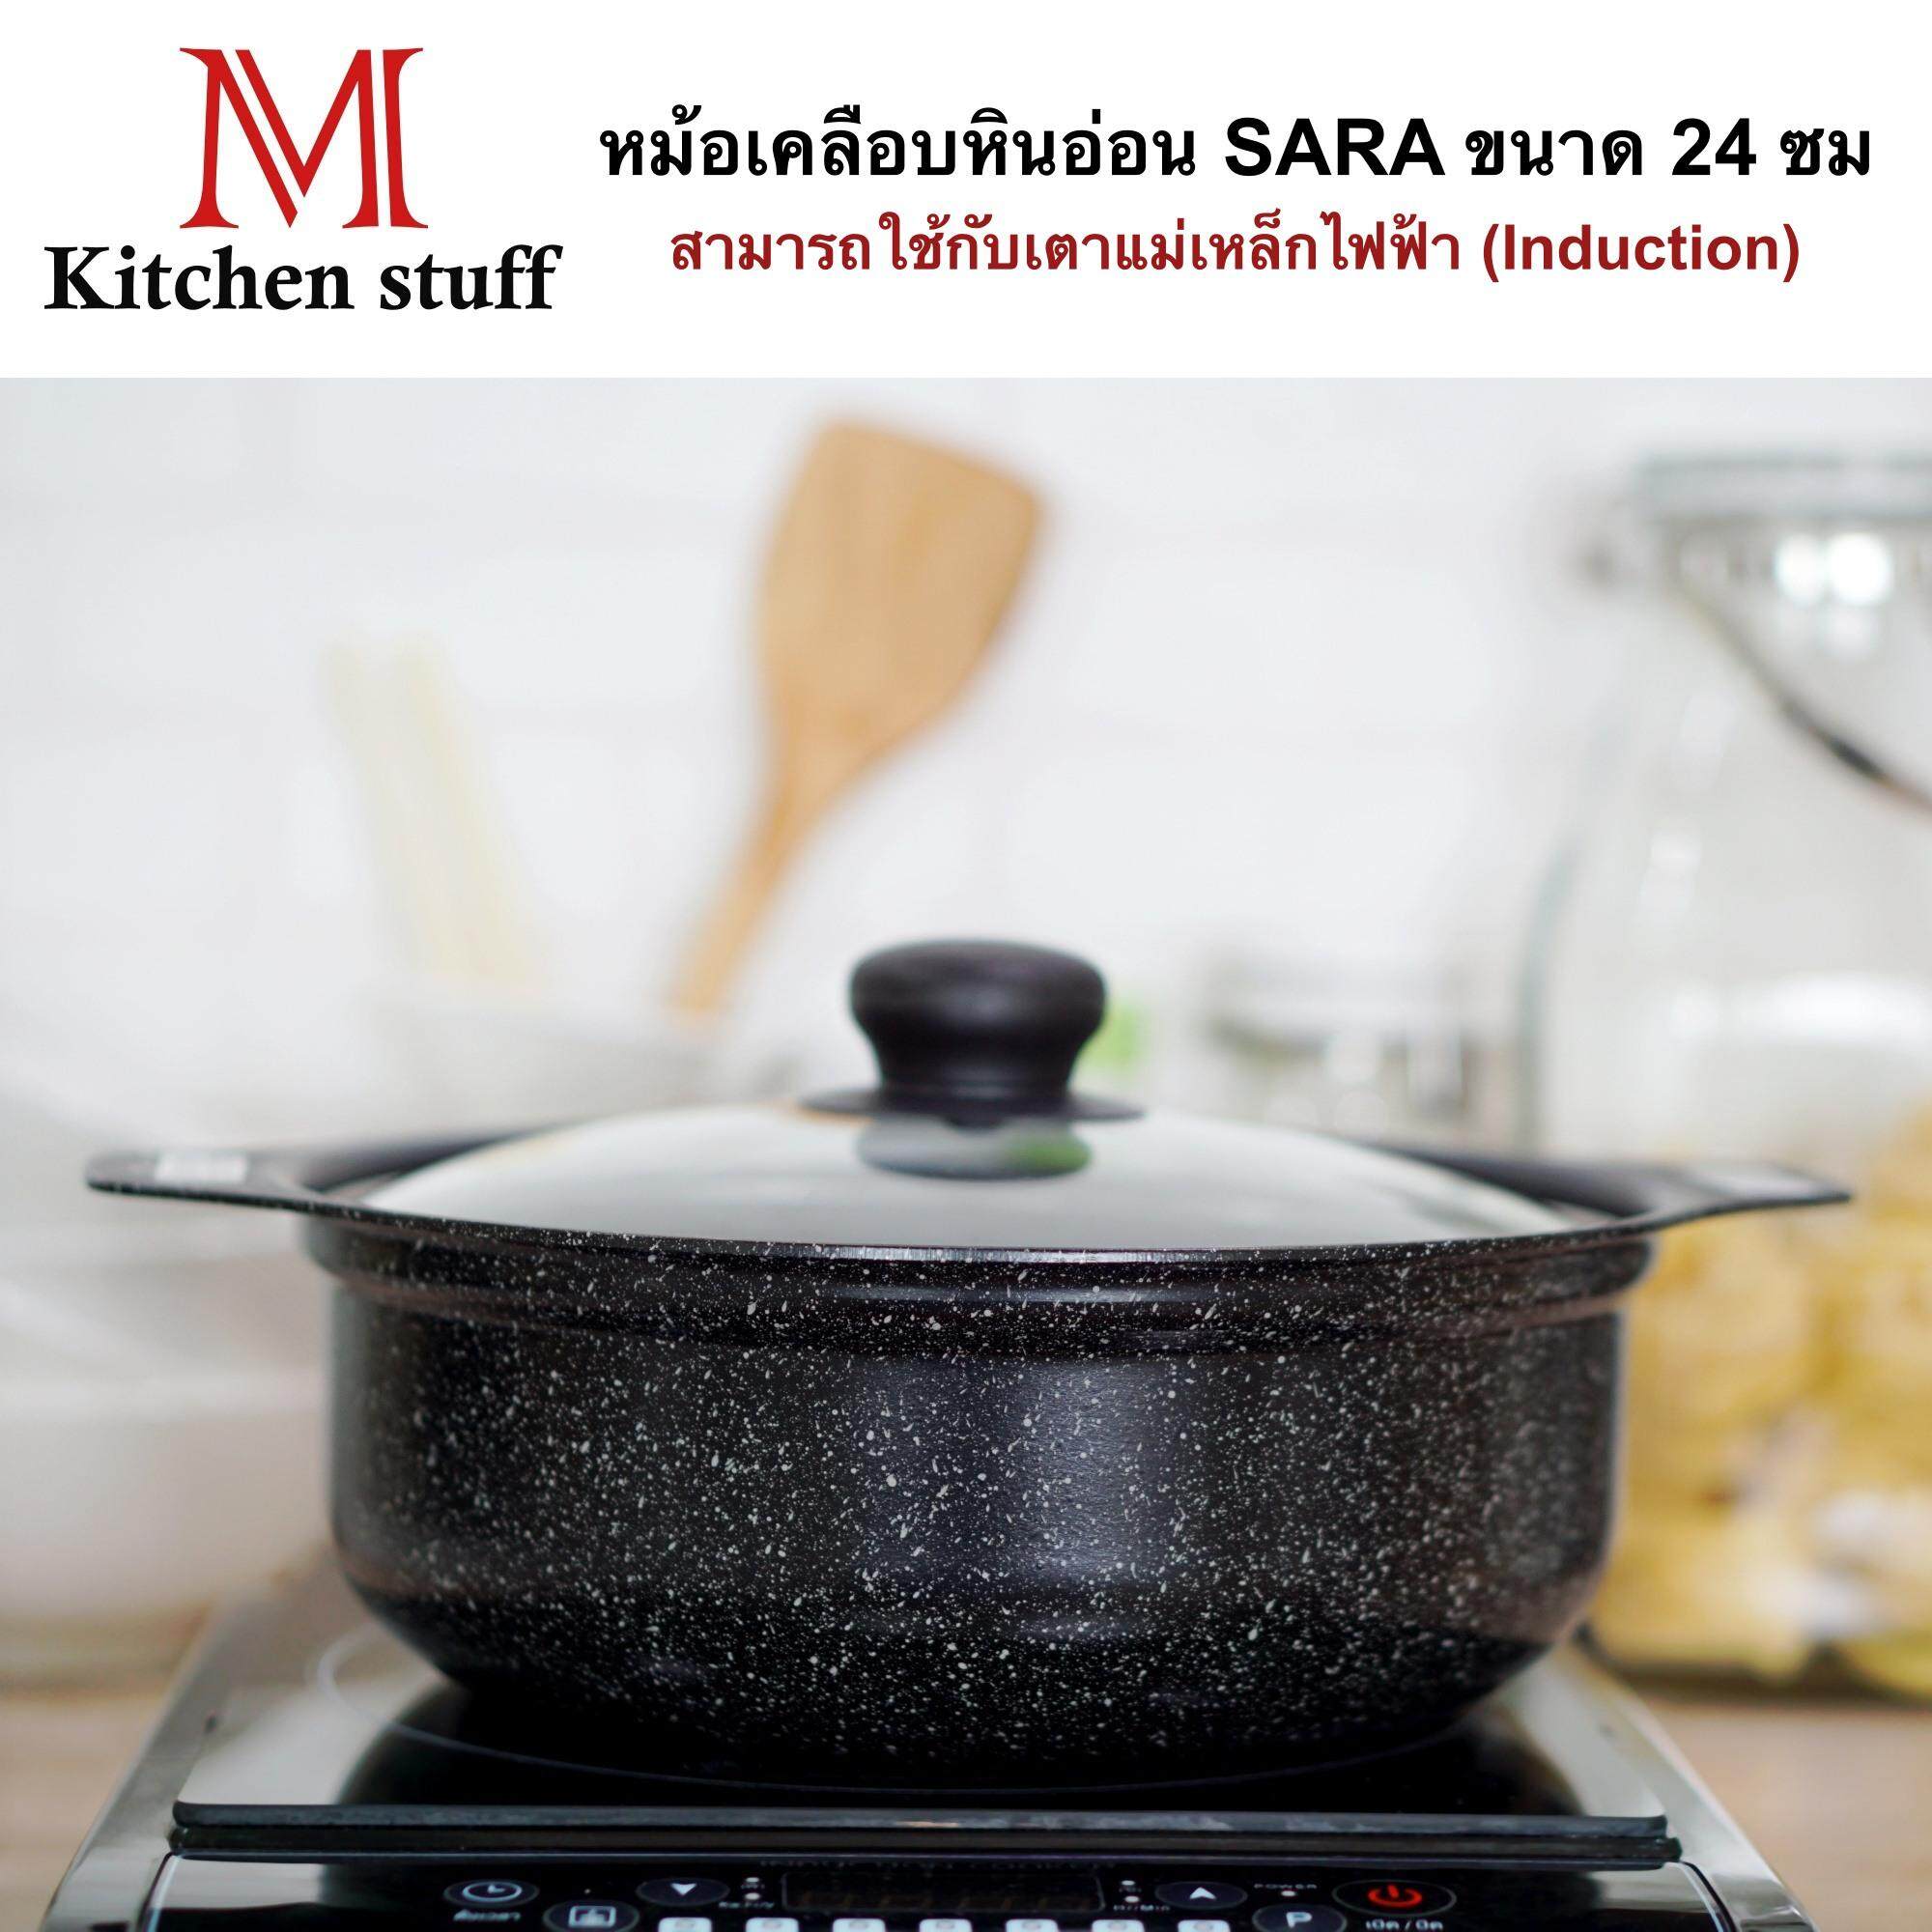 M Kitchenstuff หม้อ หม้อสุกี้ หม้อชาบู หม้อเคลือบหินอ่อนทรงเกาหลี SARA Korean style ขนาด 24 cm